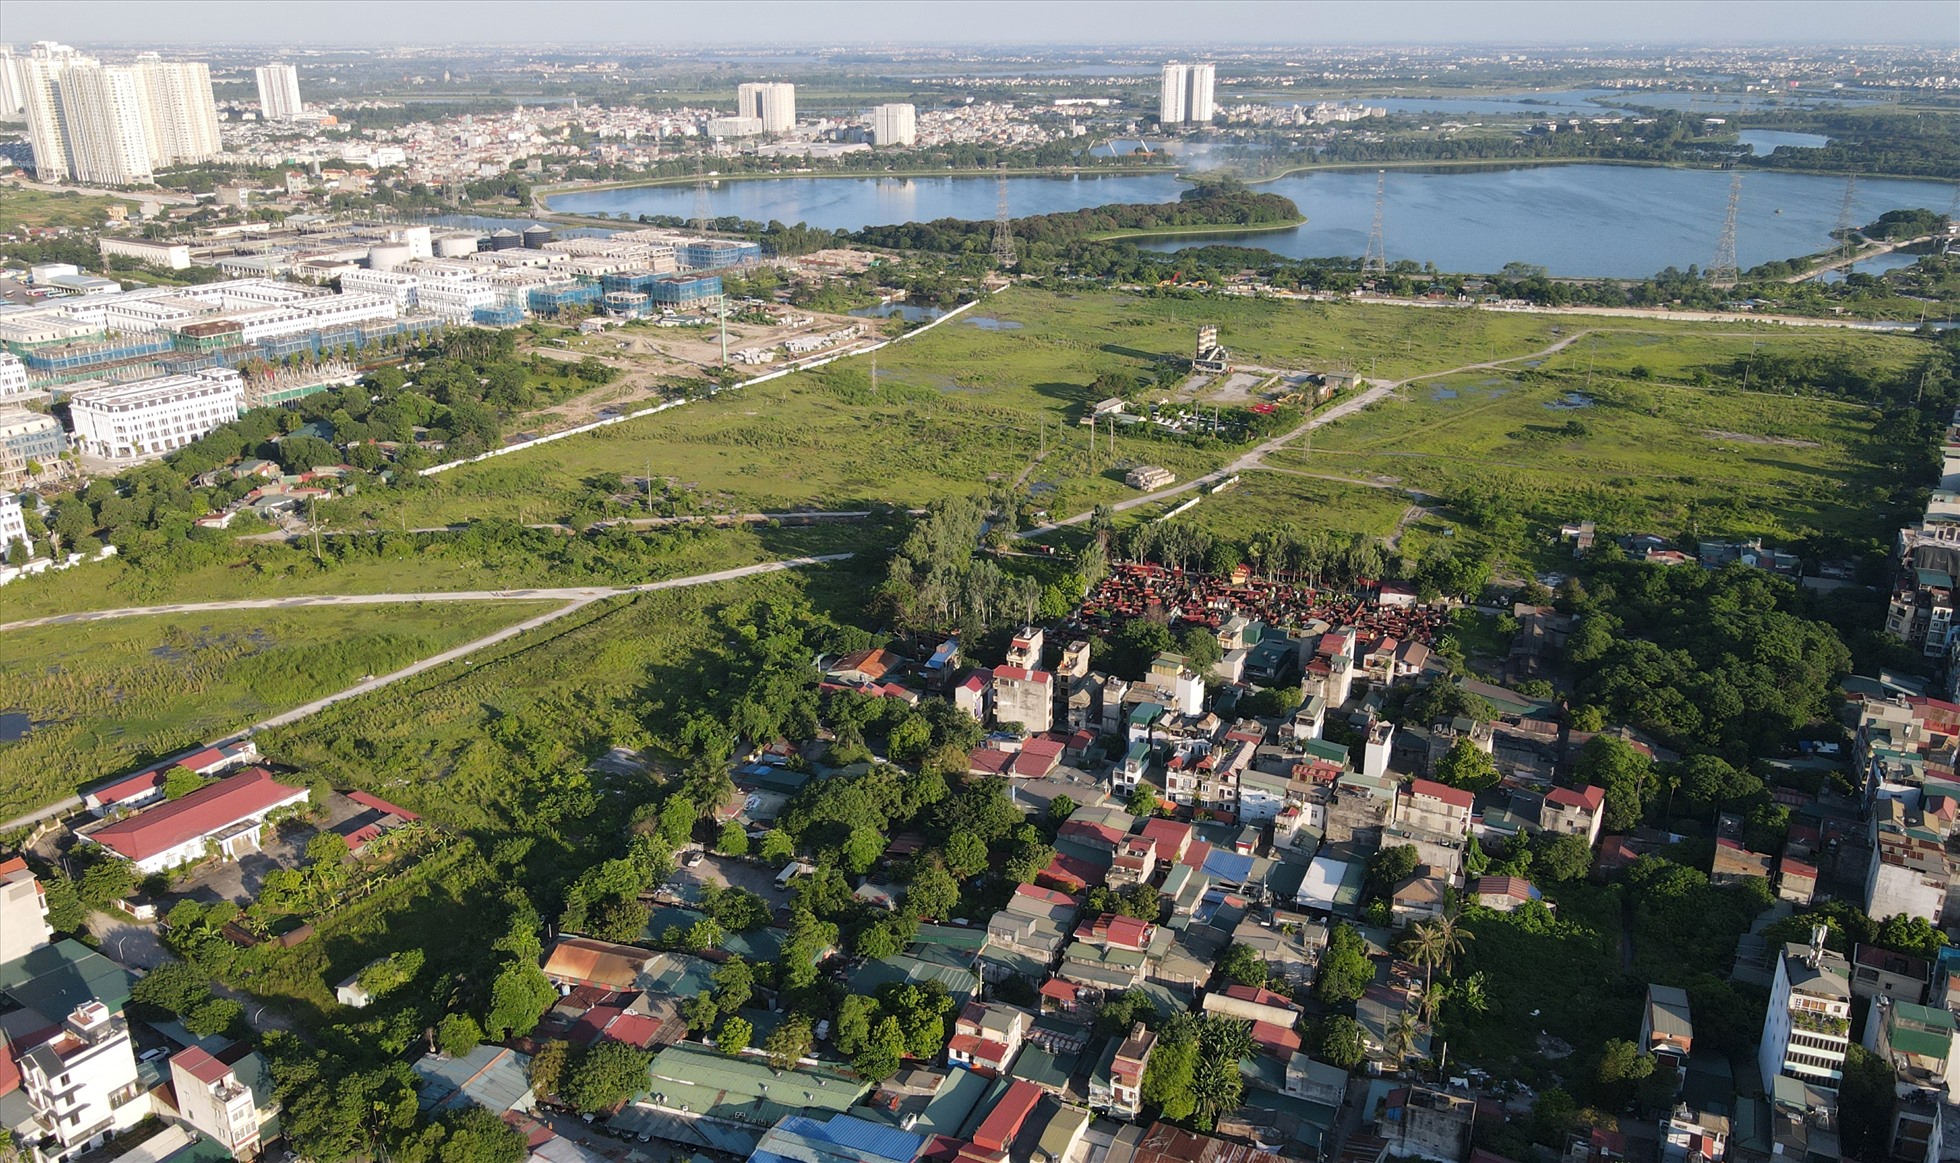 Toàn cảnh dự án Khu đô thị mới Thịnh Liệt (Hoàng Mai, Hà Nội) vẫn đang bỏ hoang, cỏ mọc um tùm, gây lãng phí tài nguyên đất.